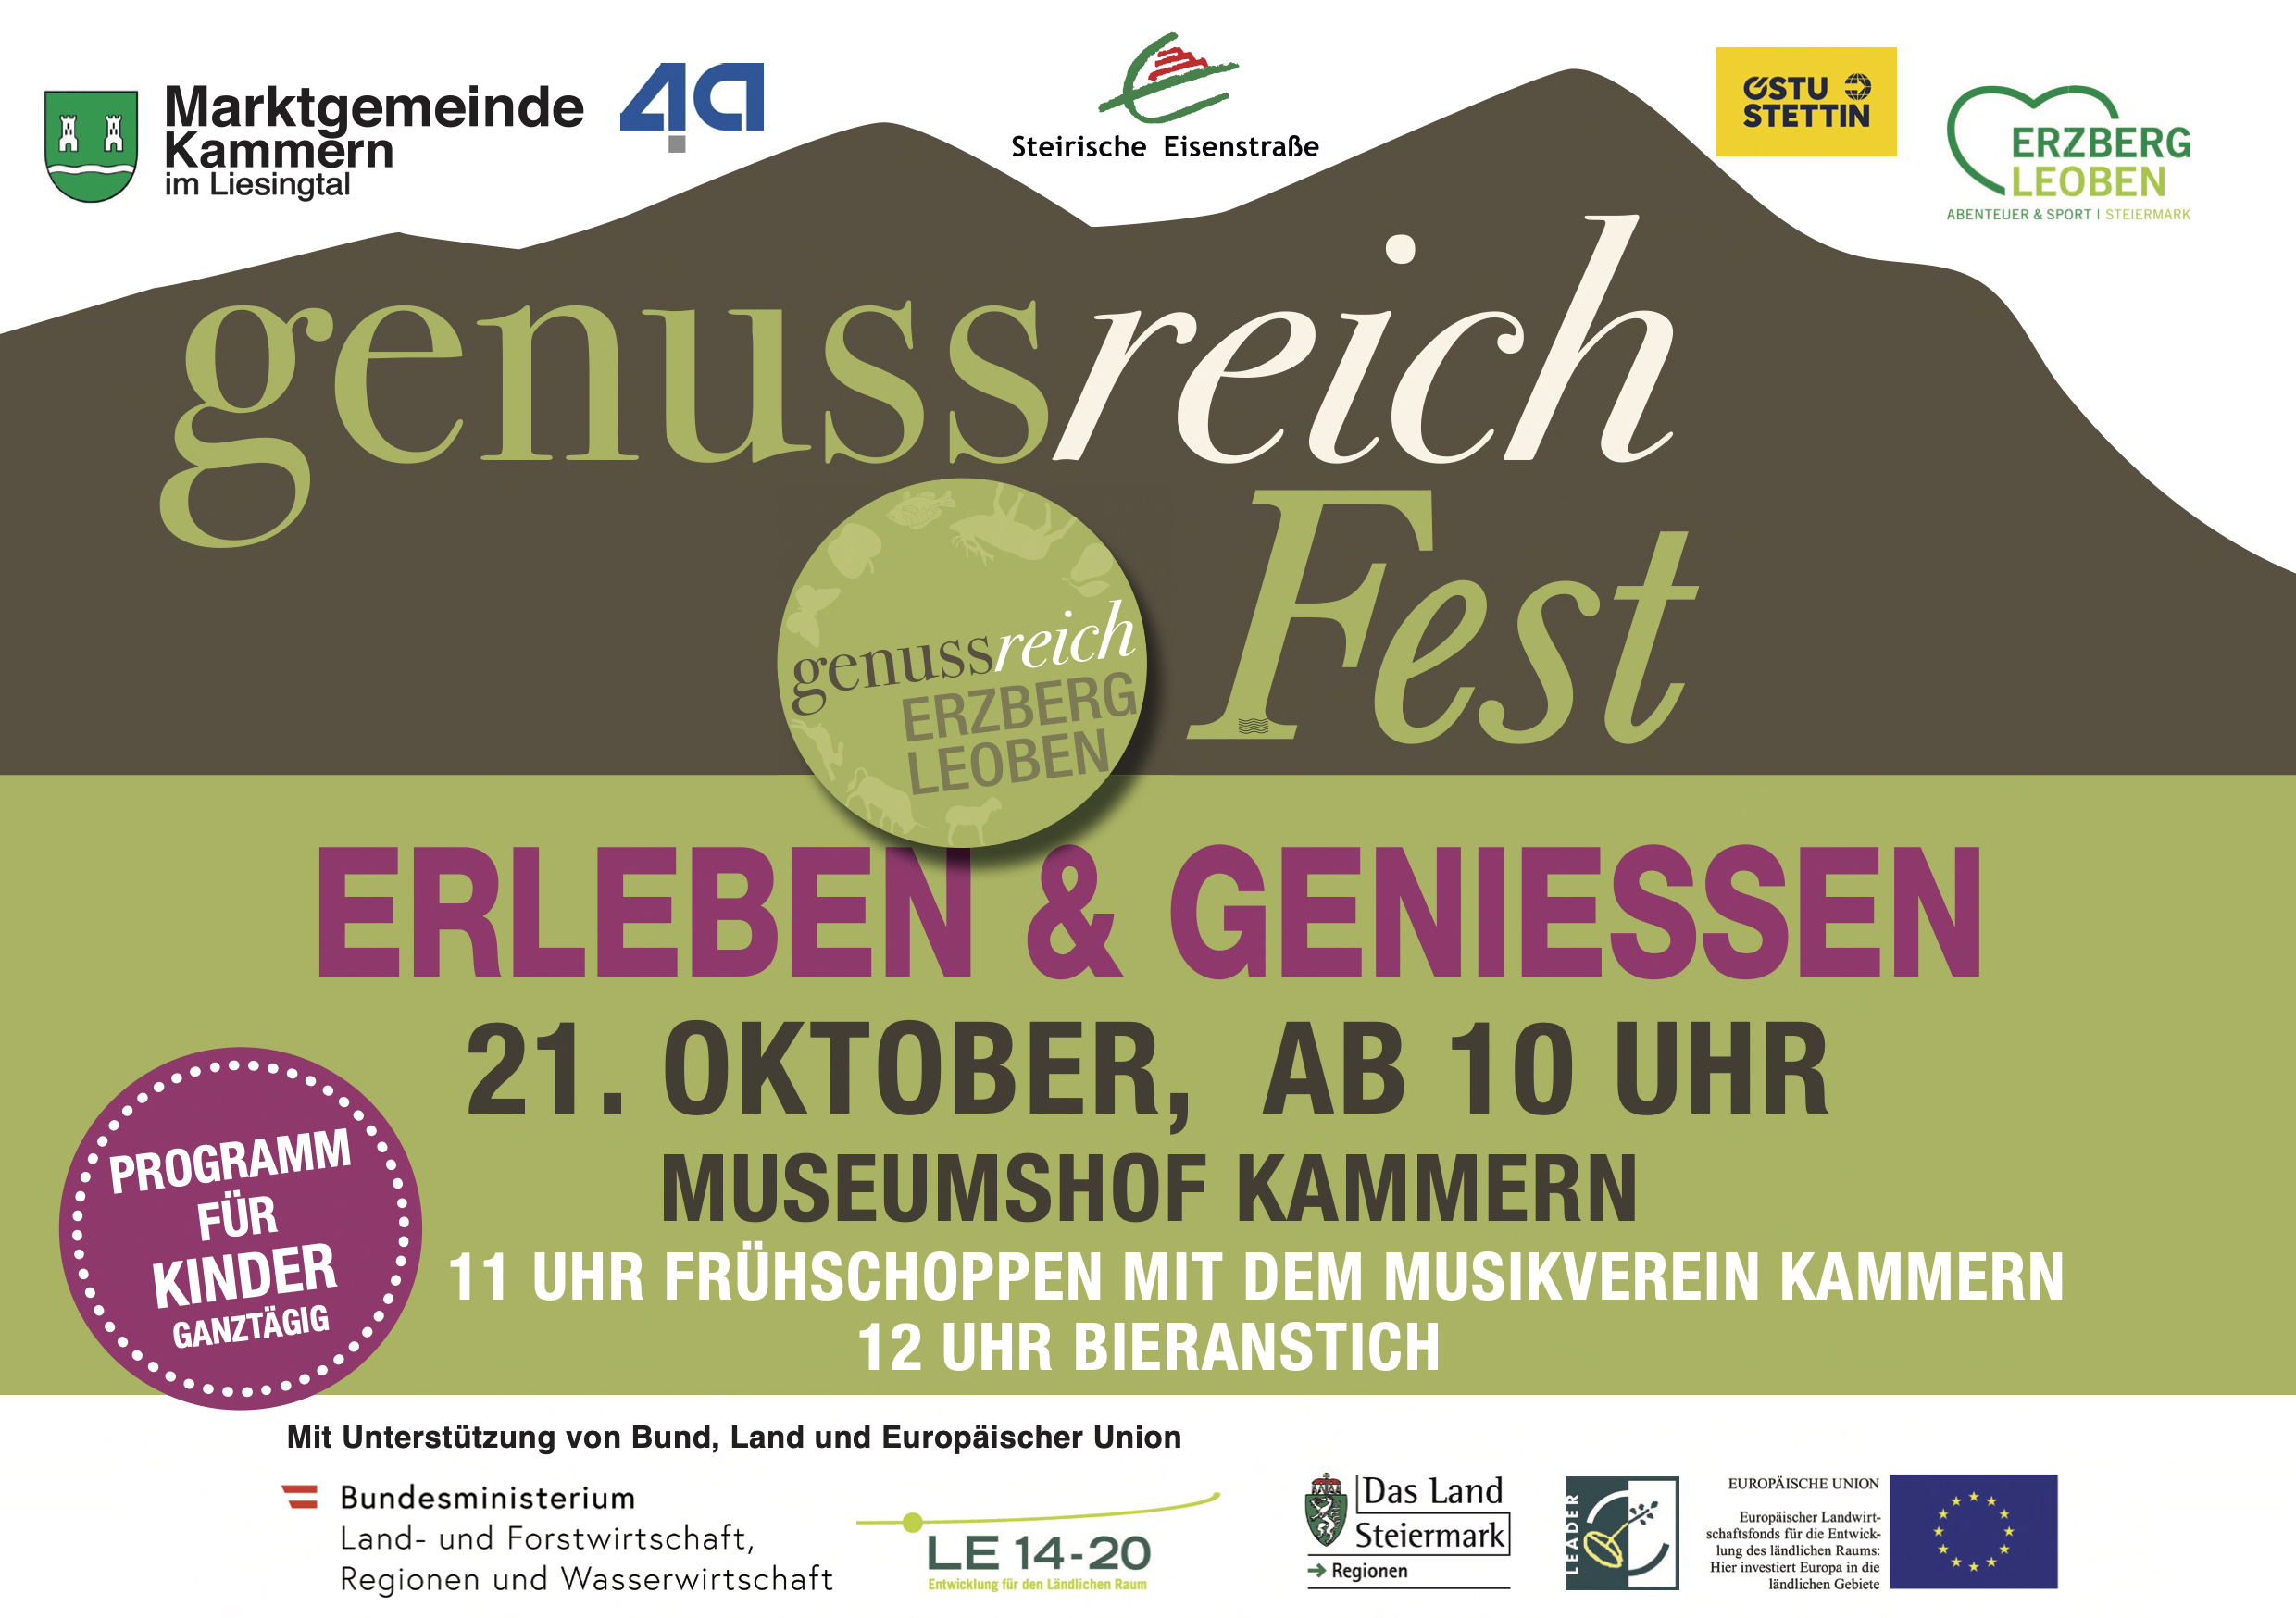 GenussReich Fest